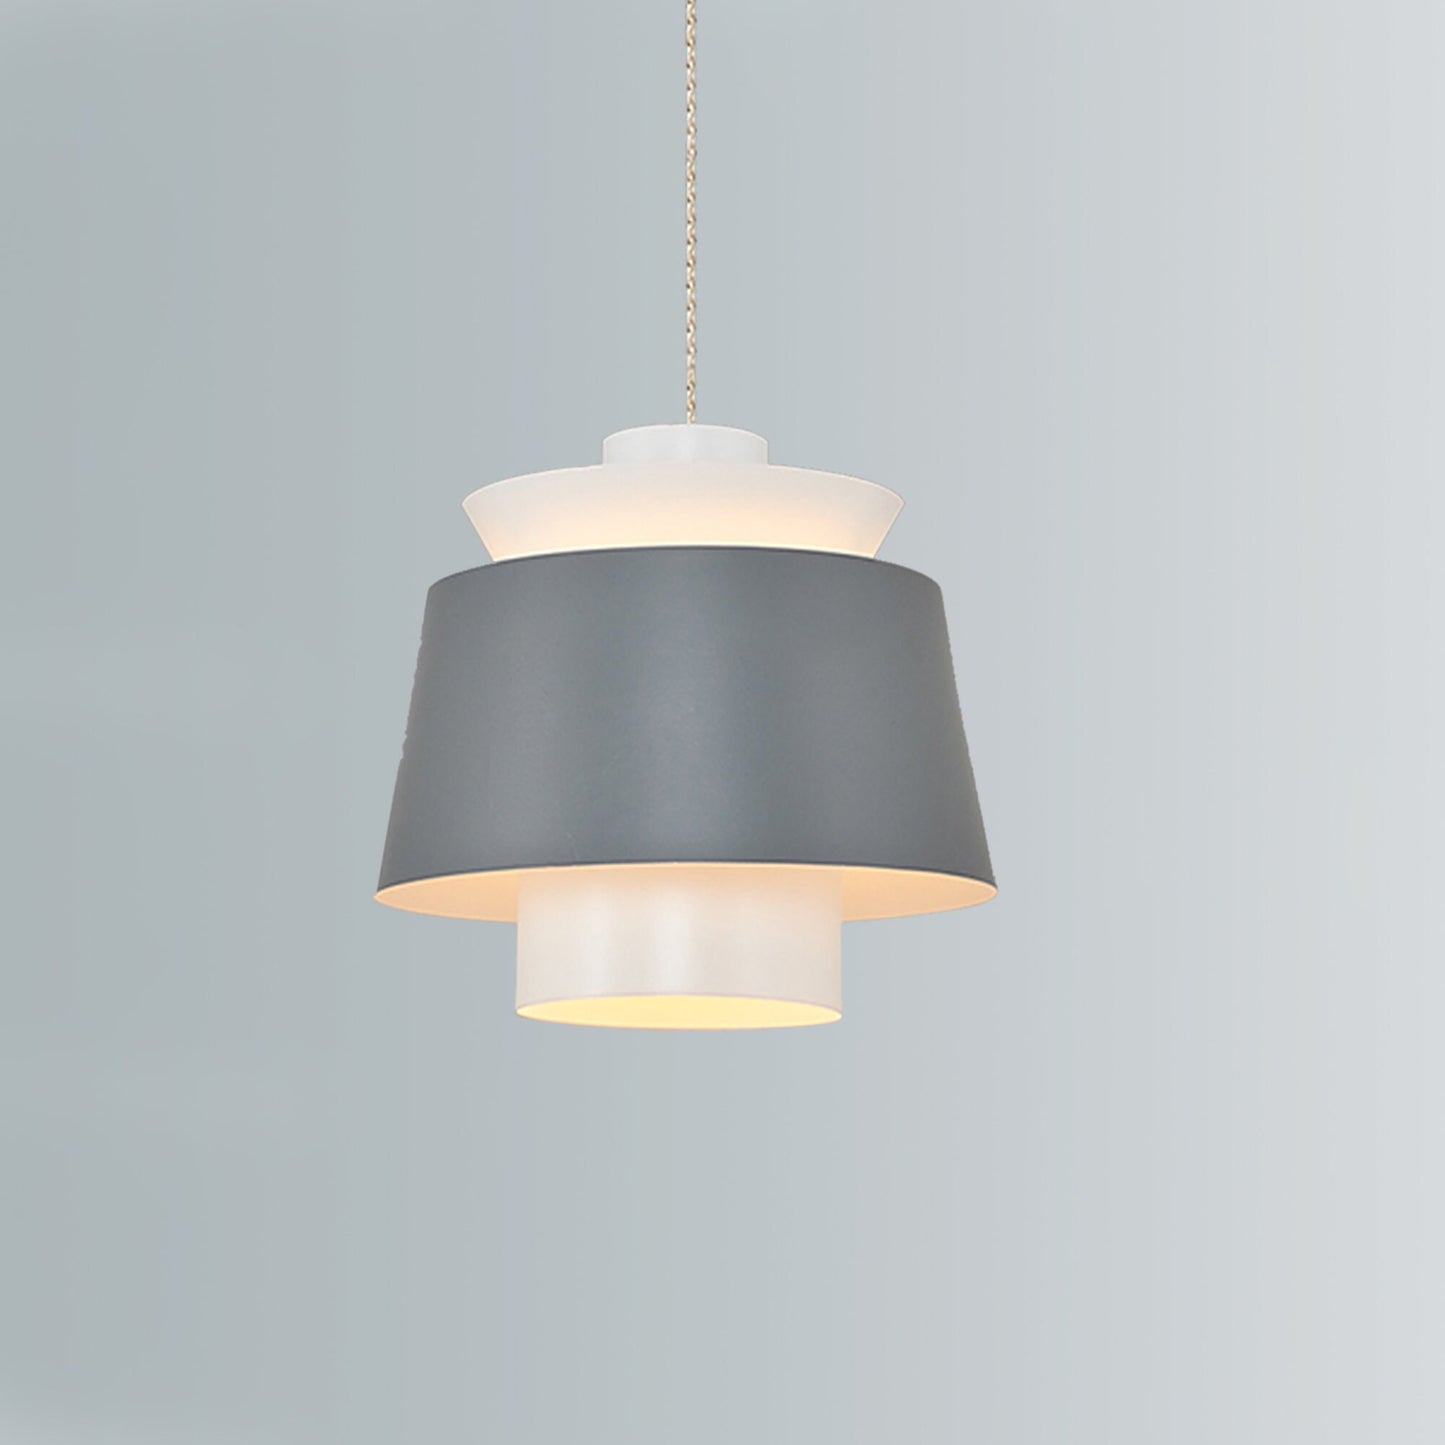 MODERN LIGHTING, Ceiling Lamp, White Fixtures, Black F��xture, Modern Lamp, Gray Light, Modern ceiling, Chandelier Light, Modern Ceiling Lamp